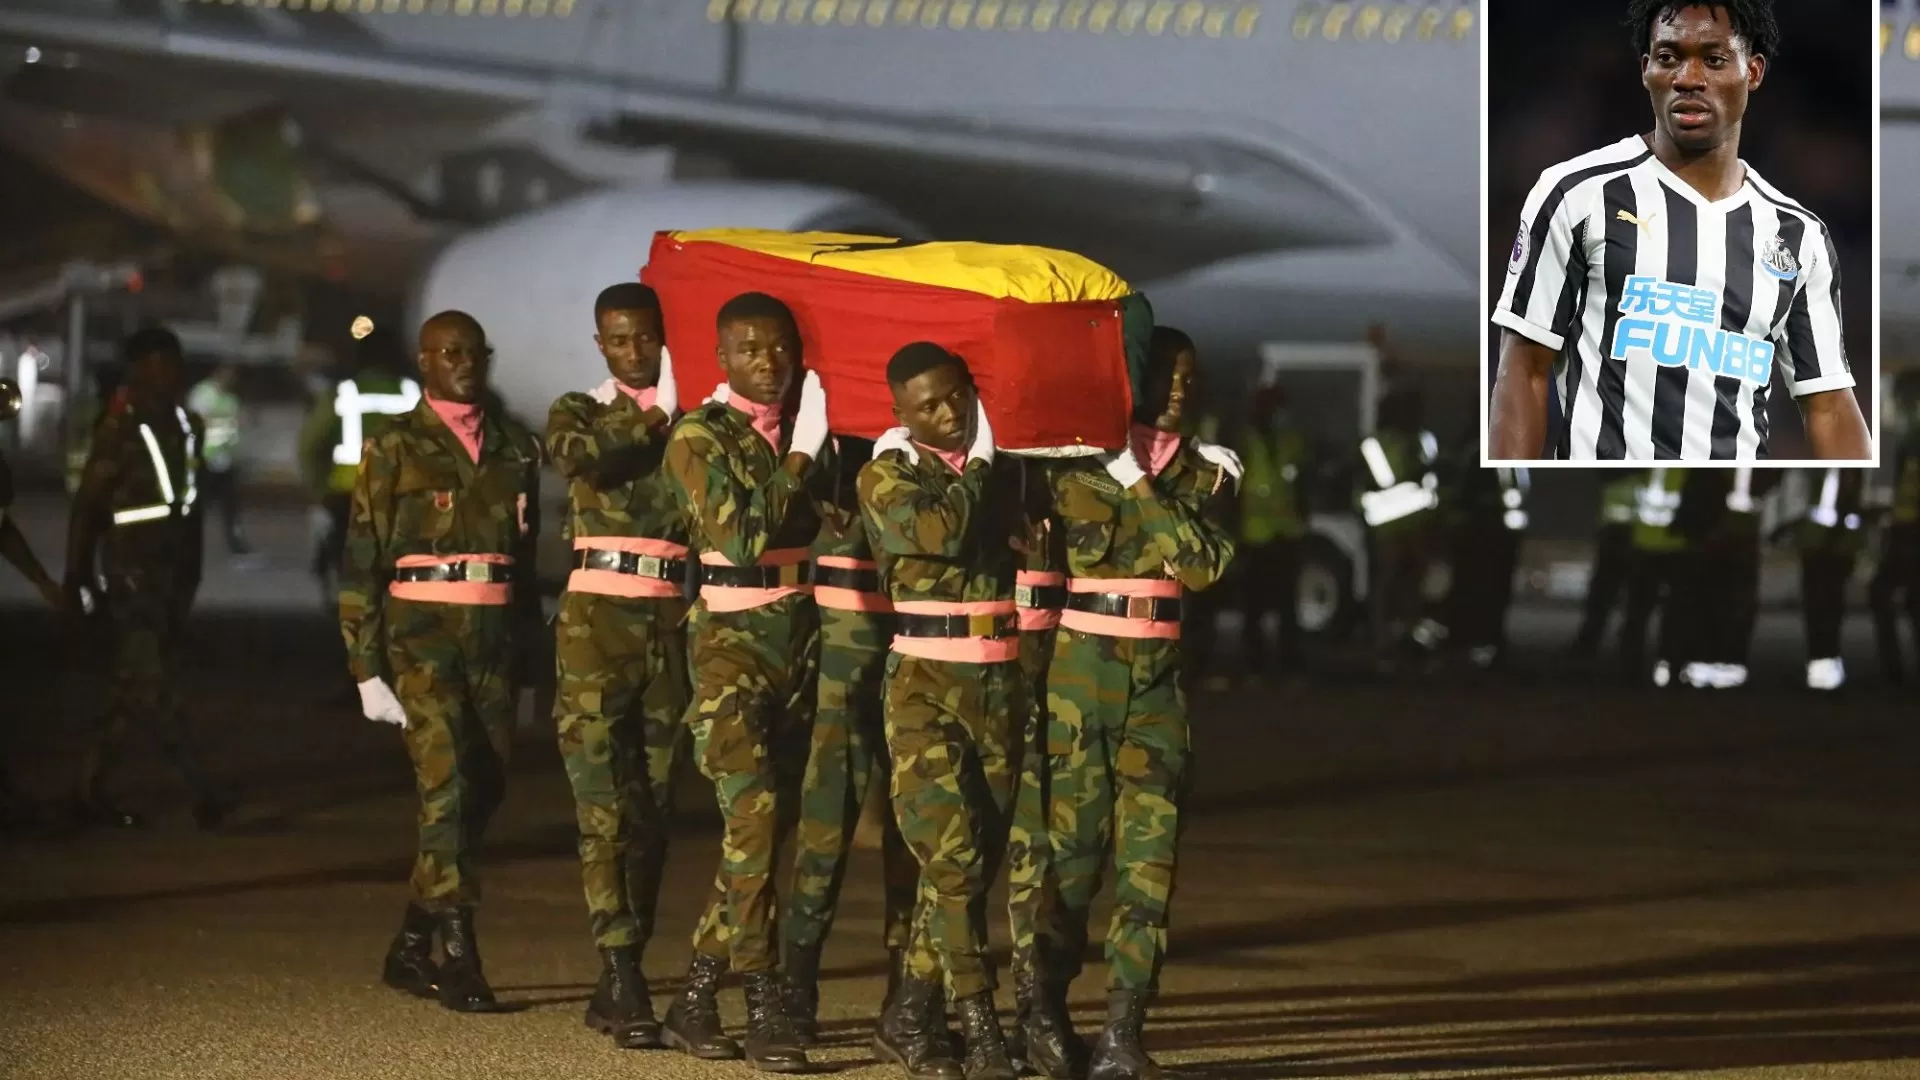 ورود پیکر آتسو به غنا با گارد احترام نظامی (عکس)